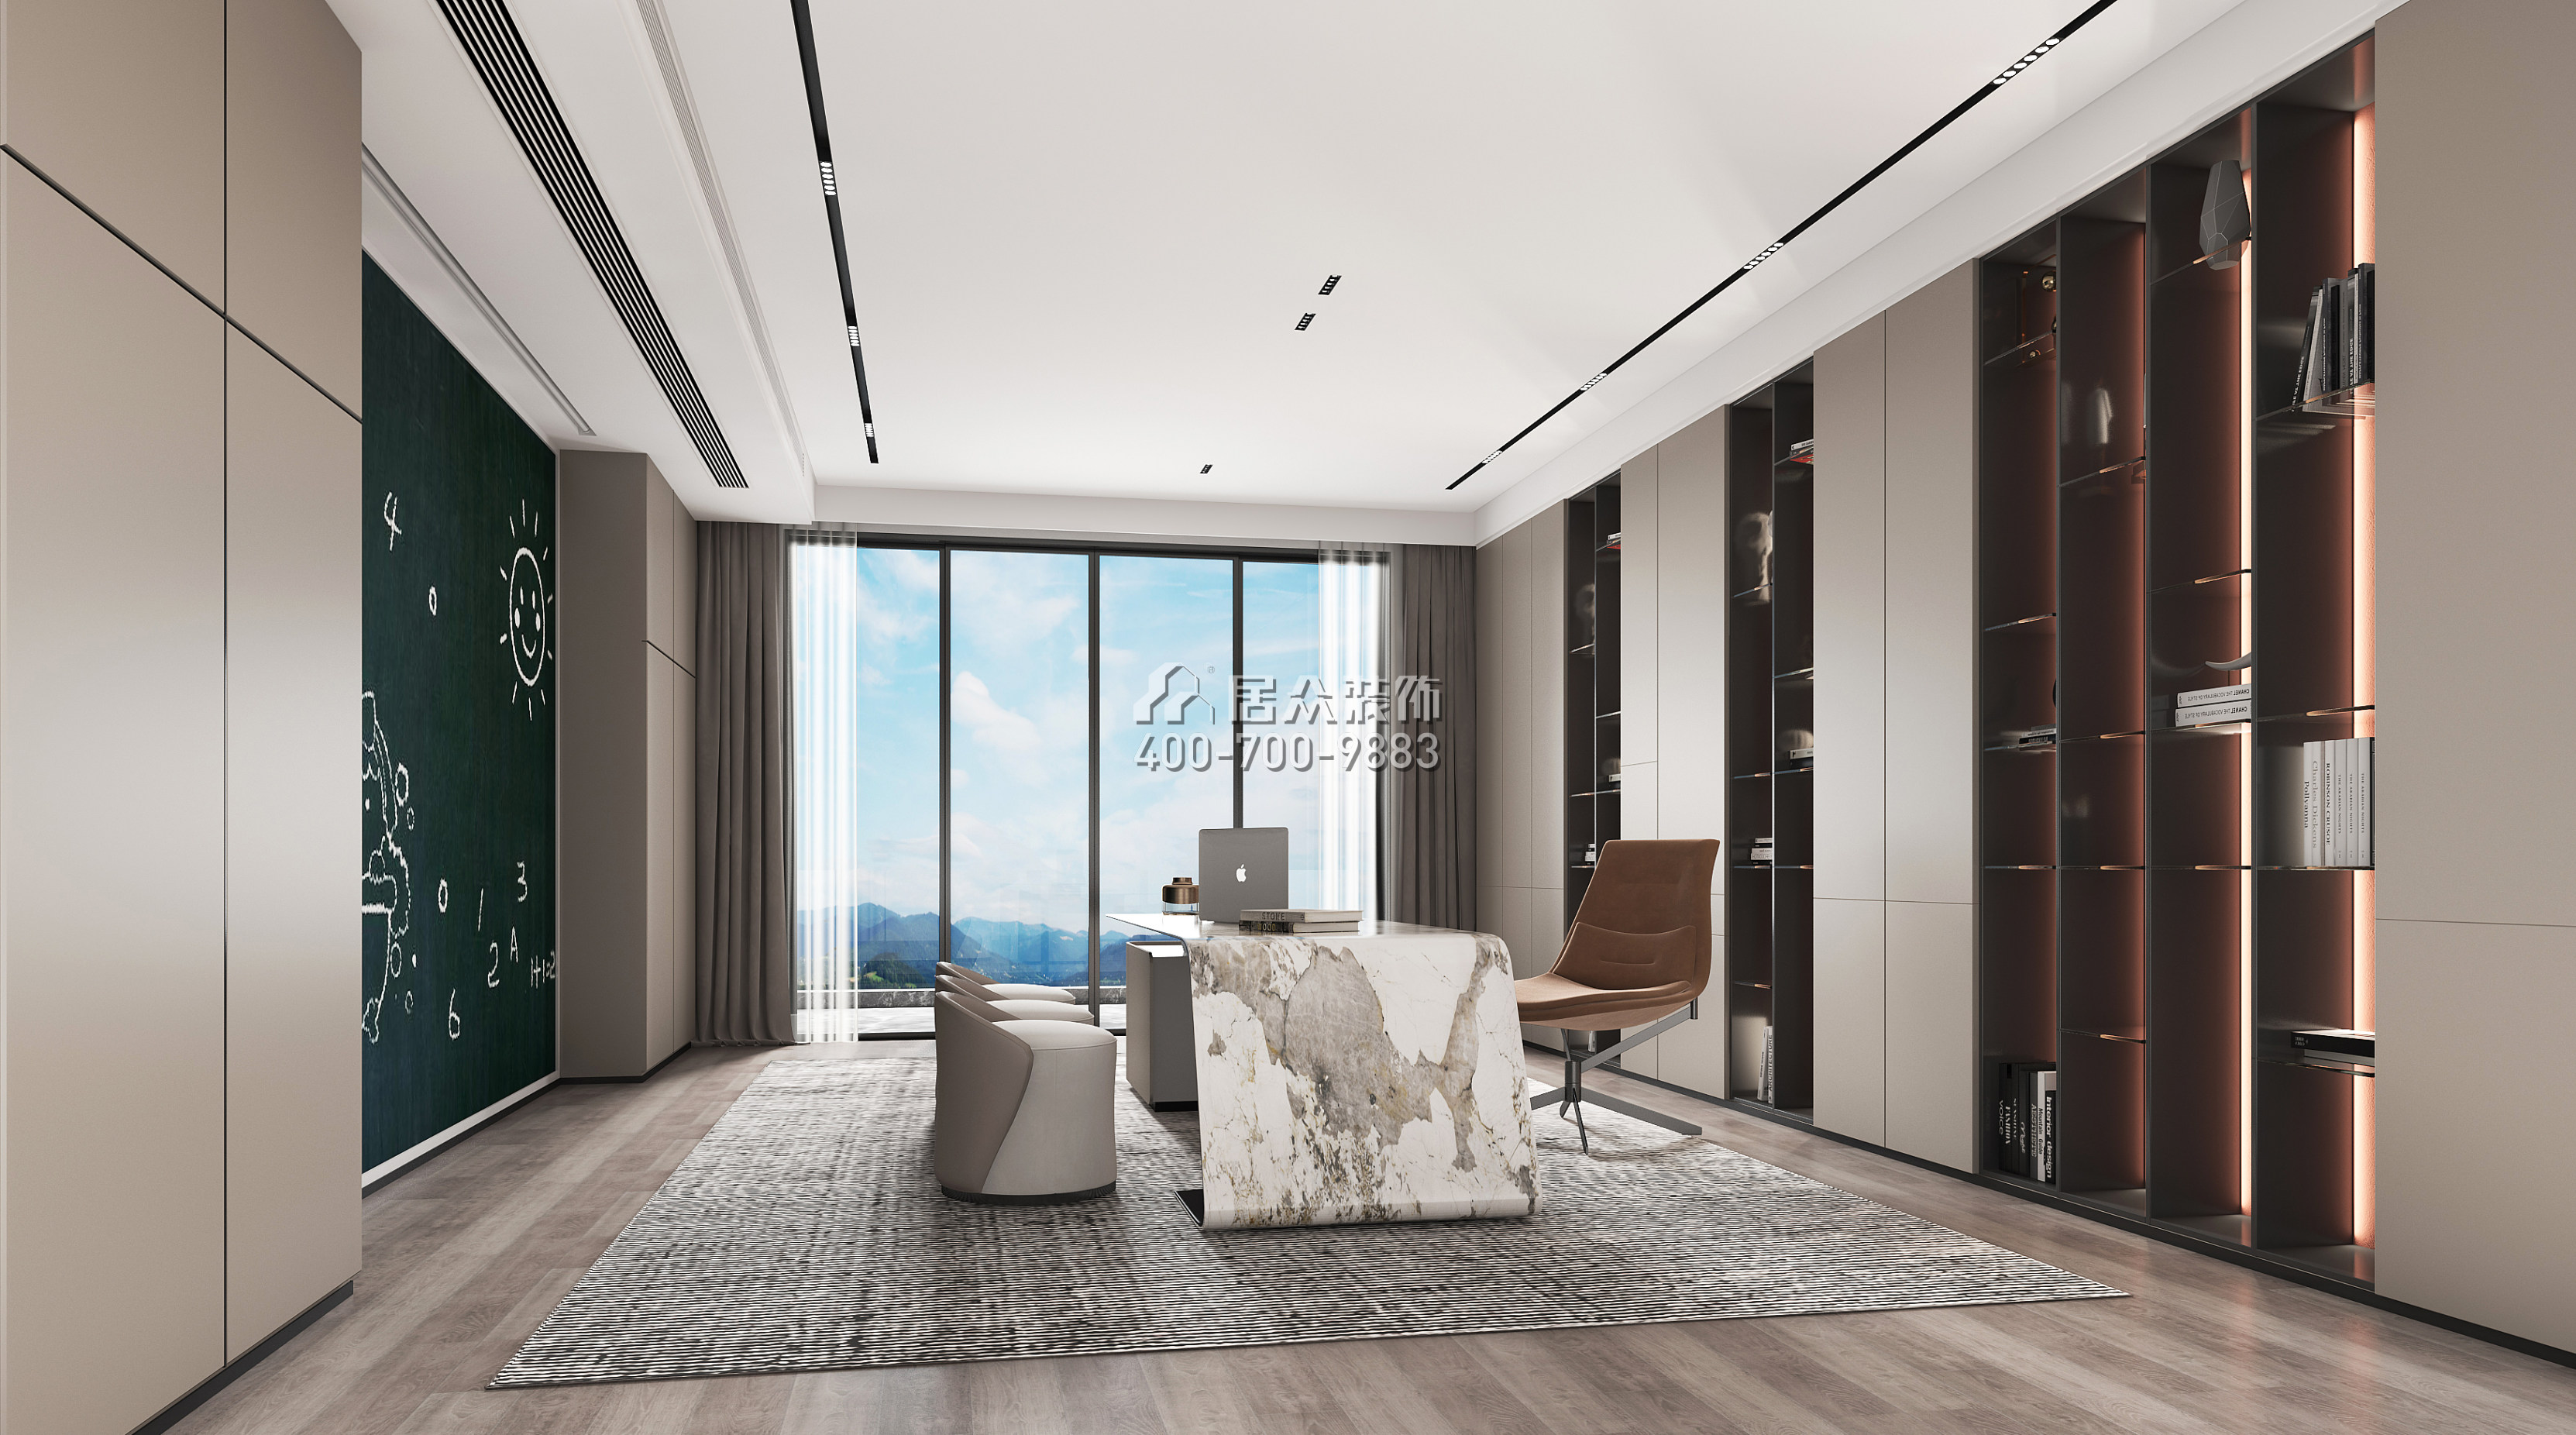 海逸豪庭900平方米現代簡約風格別墅戶型臥室裝修效果圖